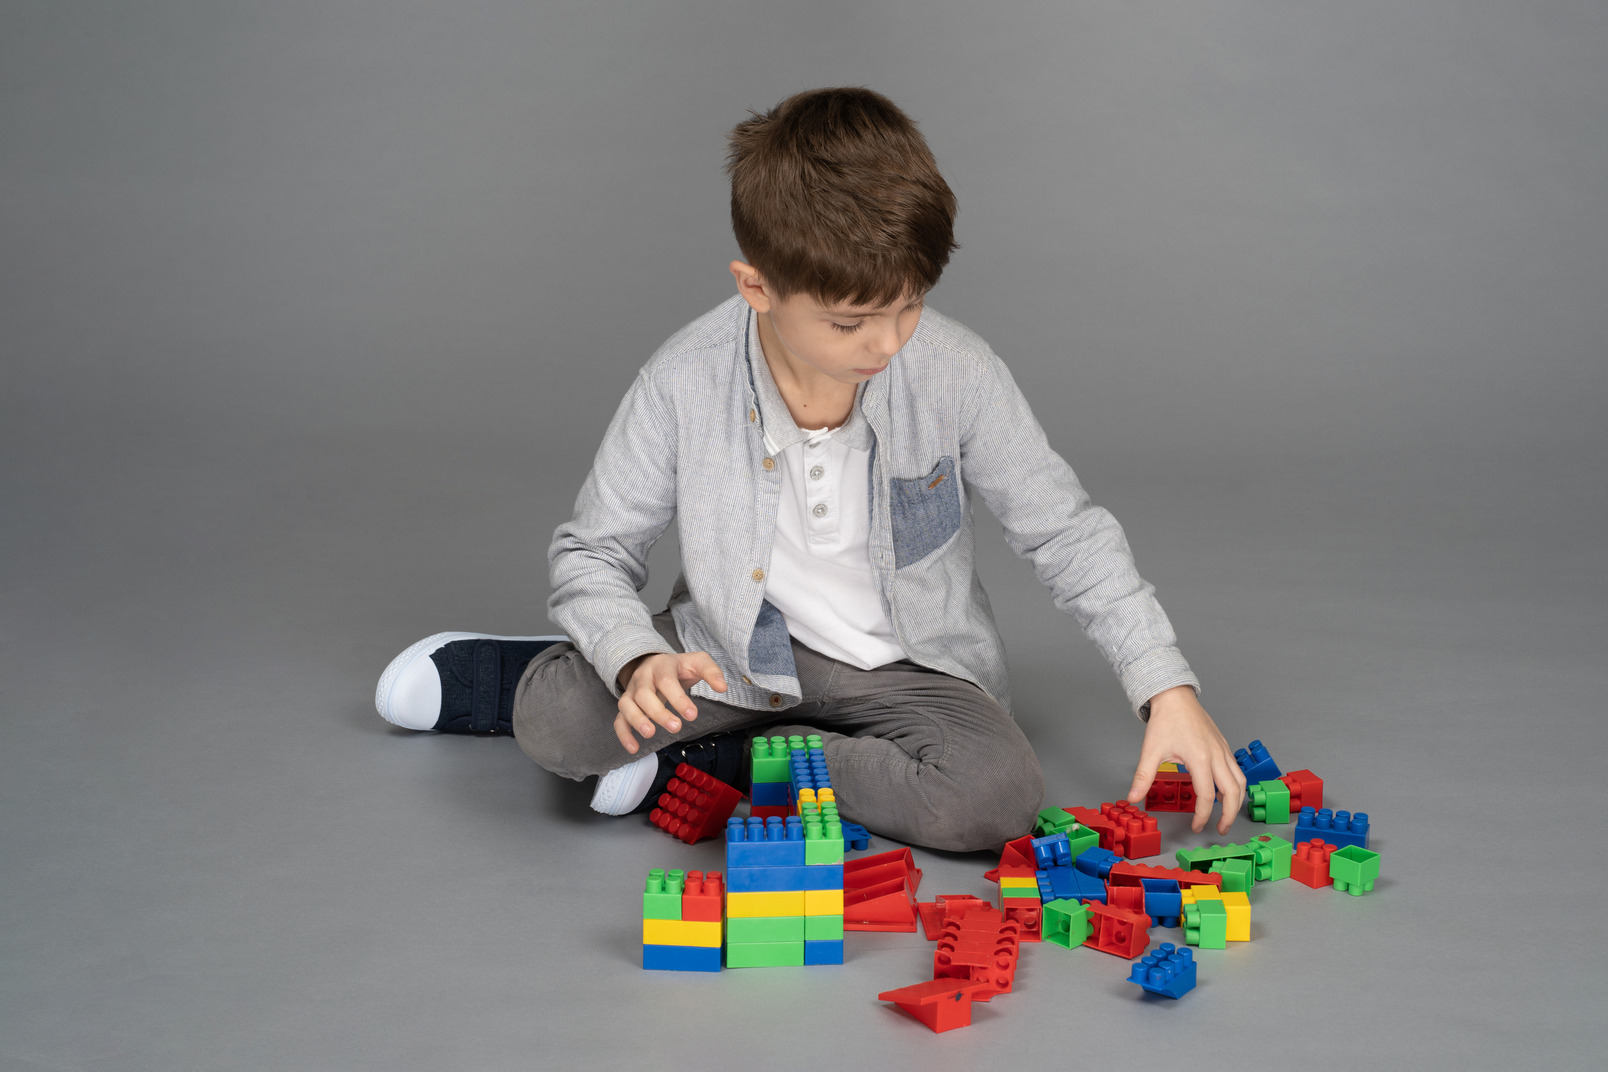 レゴをしている男の子